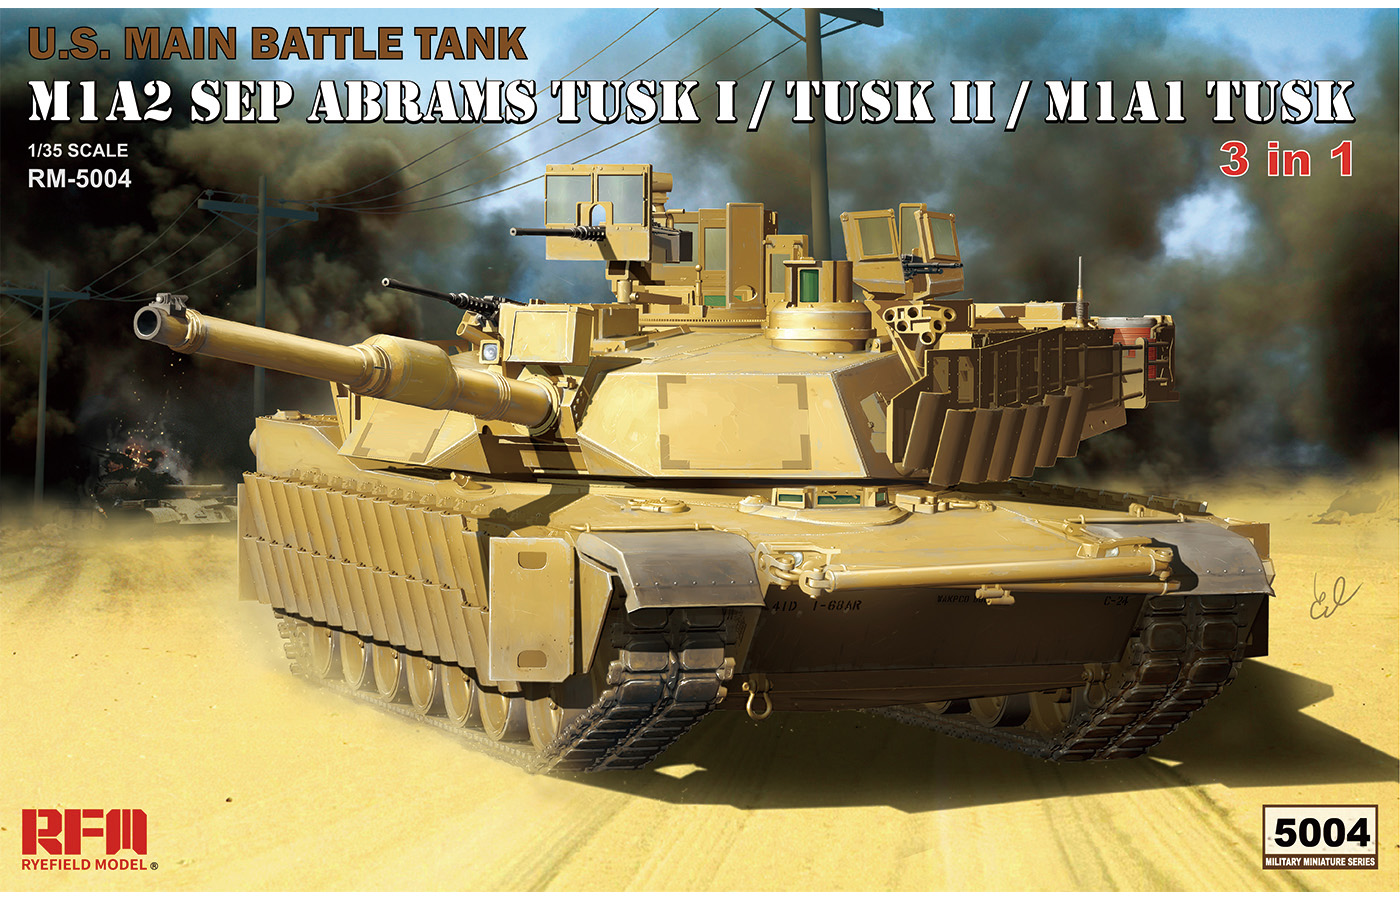 RM-5004 M1A1 TUSK I / M1A2 TUSKI/ TUSKII 3 in 1